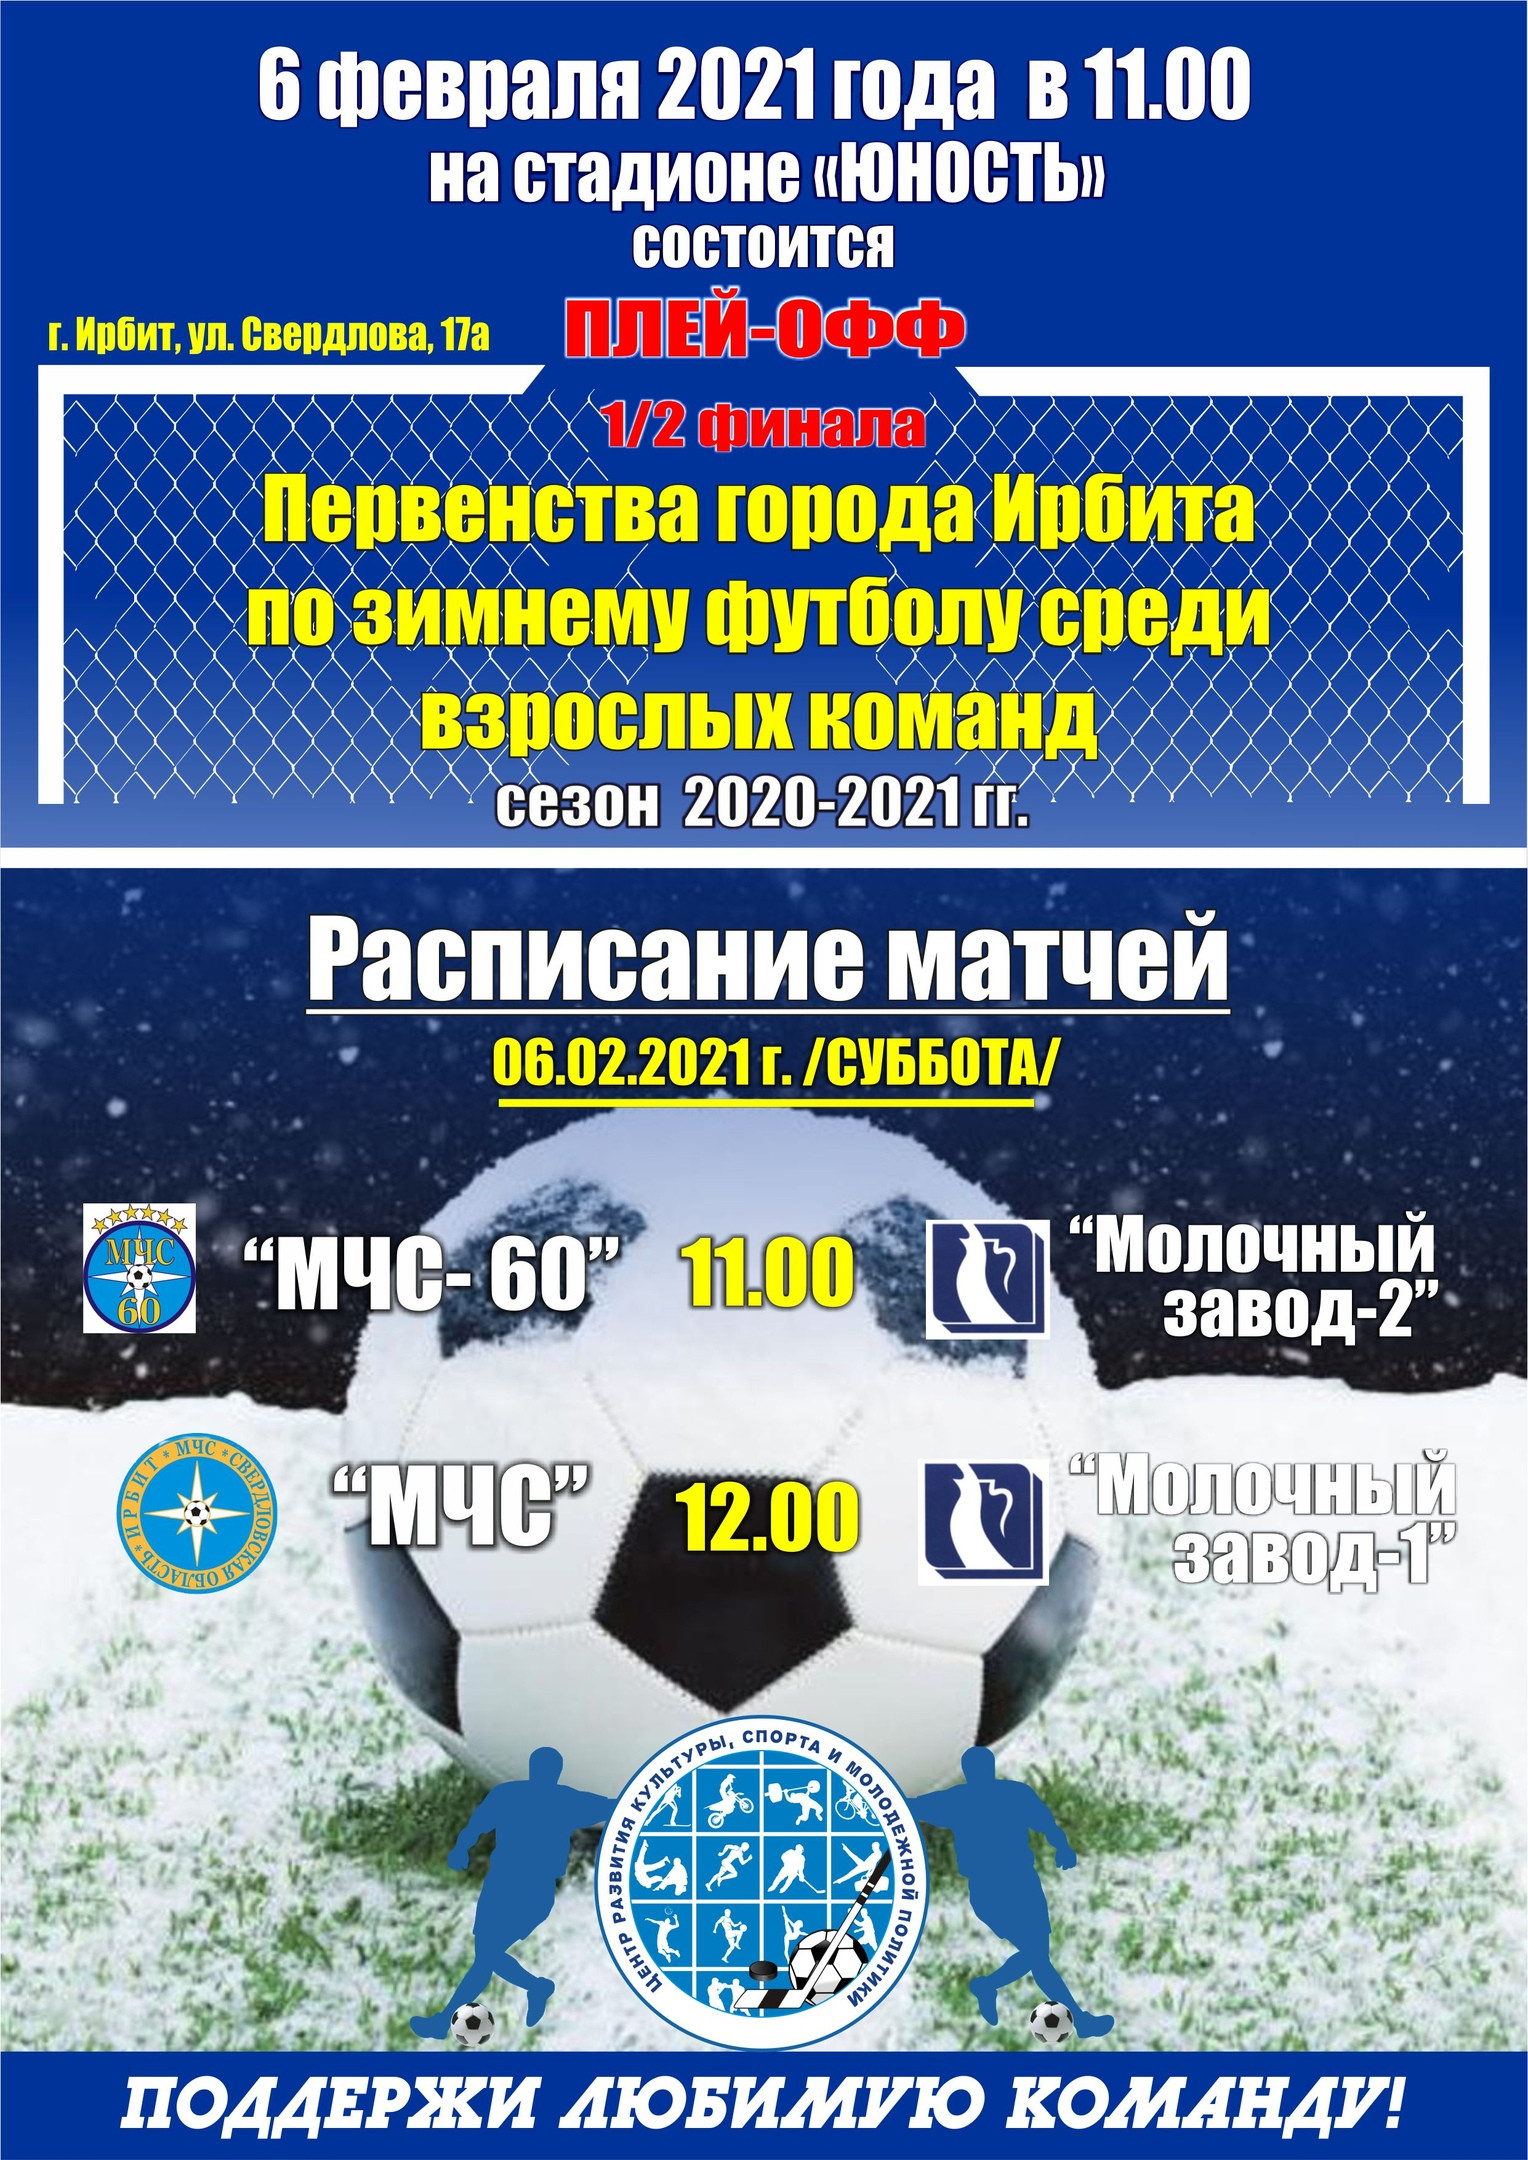 1/2 финала Первенства города Ирбита по зимнему футболу среди взрослых команд, сезон 2020-2021 гг.